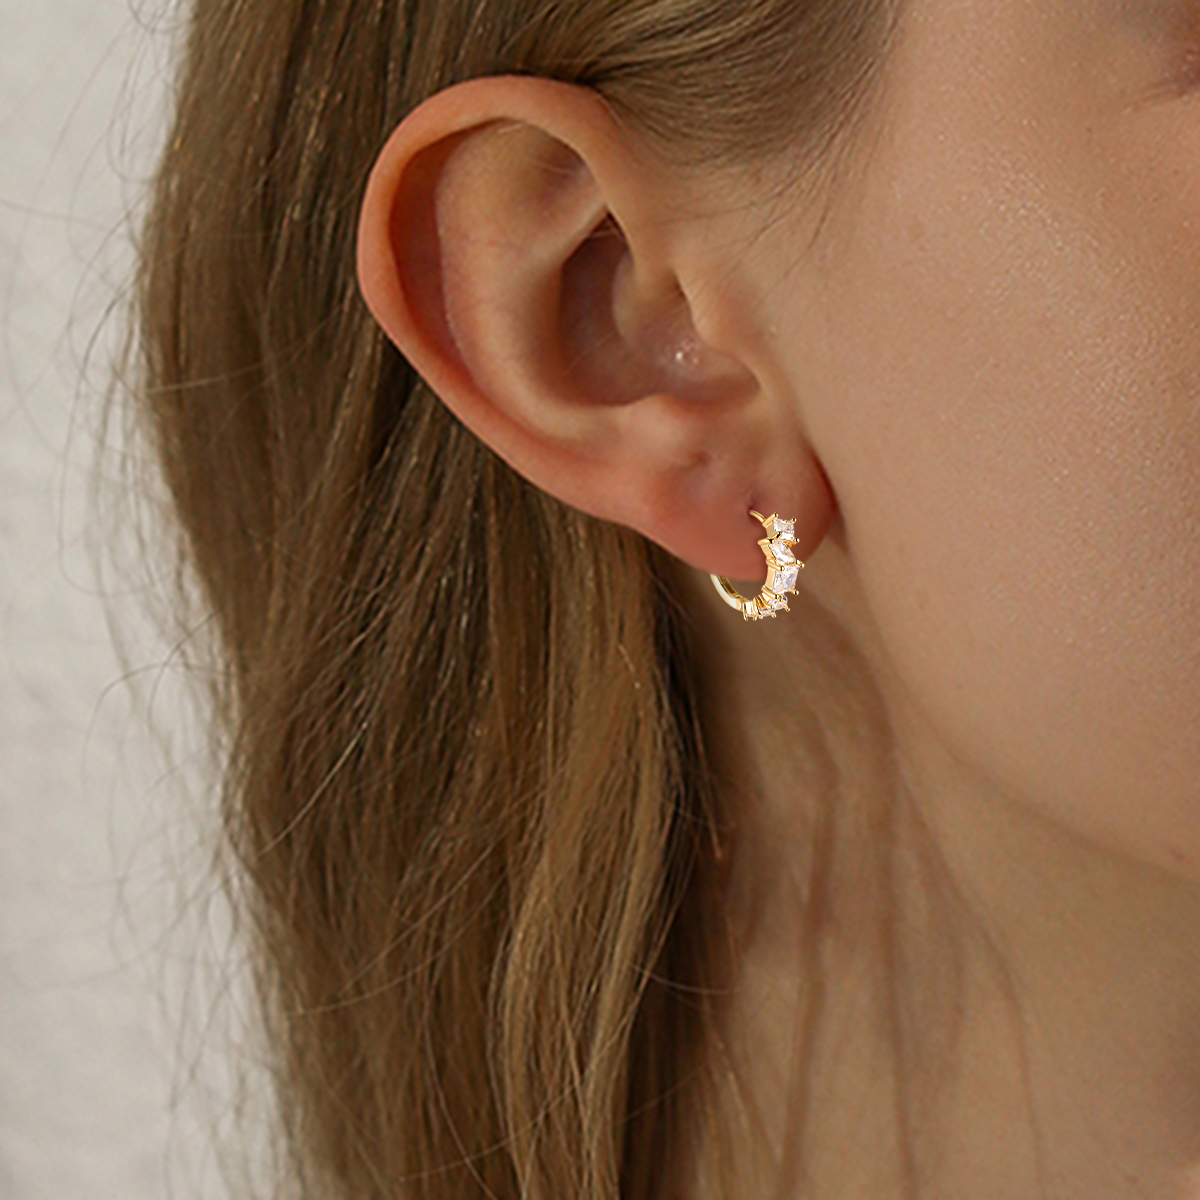 Schönen Diamond Gold-plated Earrings